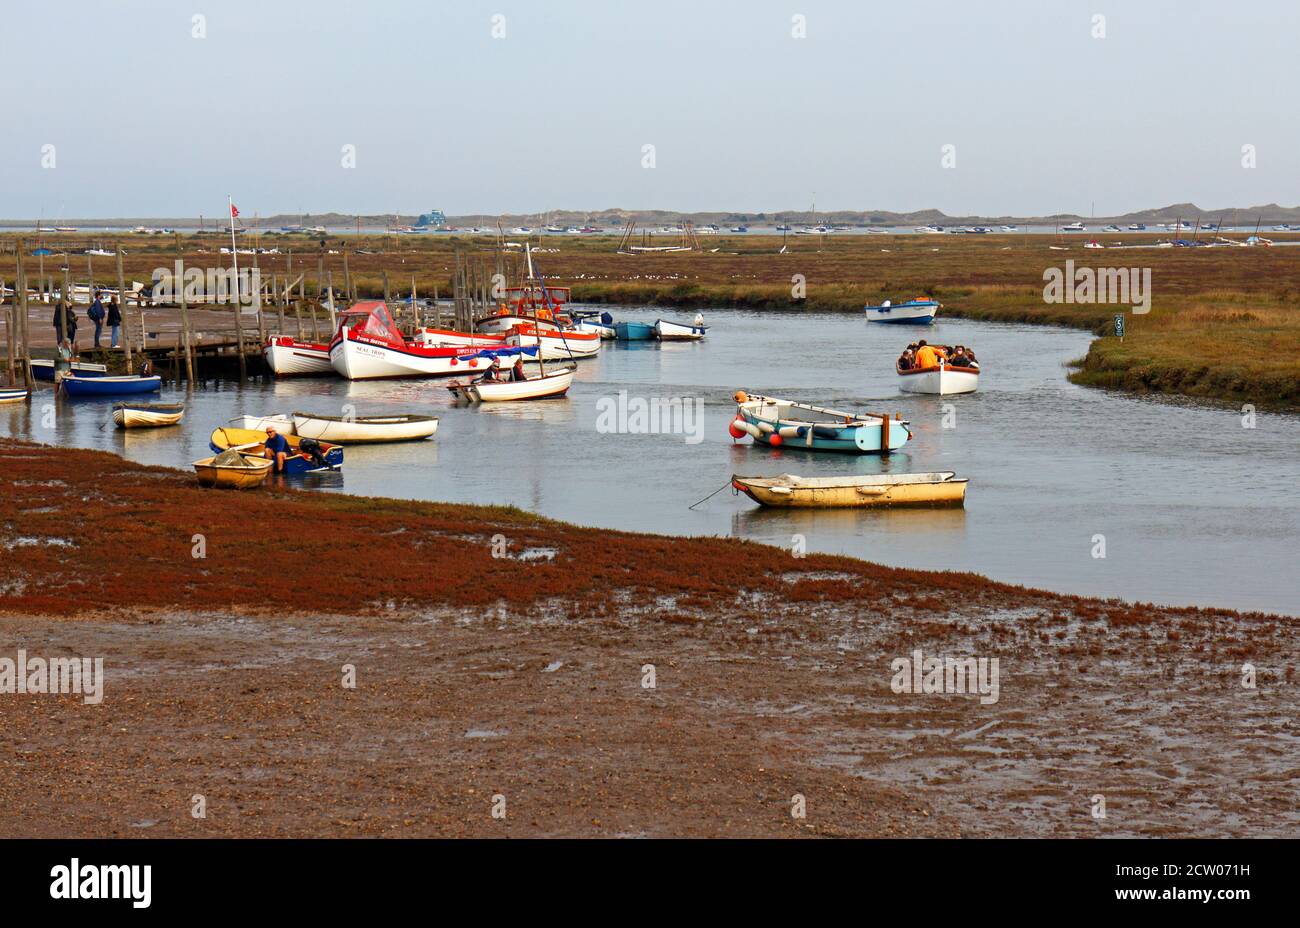 Une vue sur le quai avec des bateaux en préparation pour des voyages de phoques à Morston Creek, dans le nord de Norfolk, à Morston, Norfolk, Angleterre, Royaume-Uni. Banque D'Images